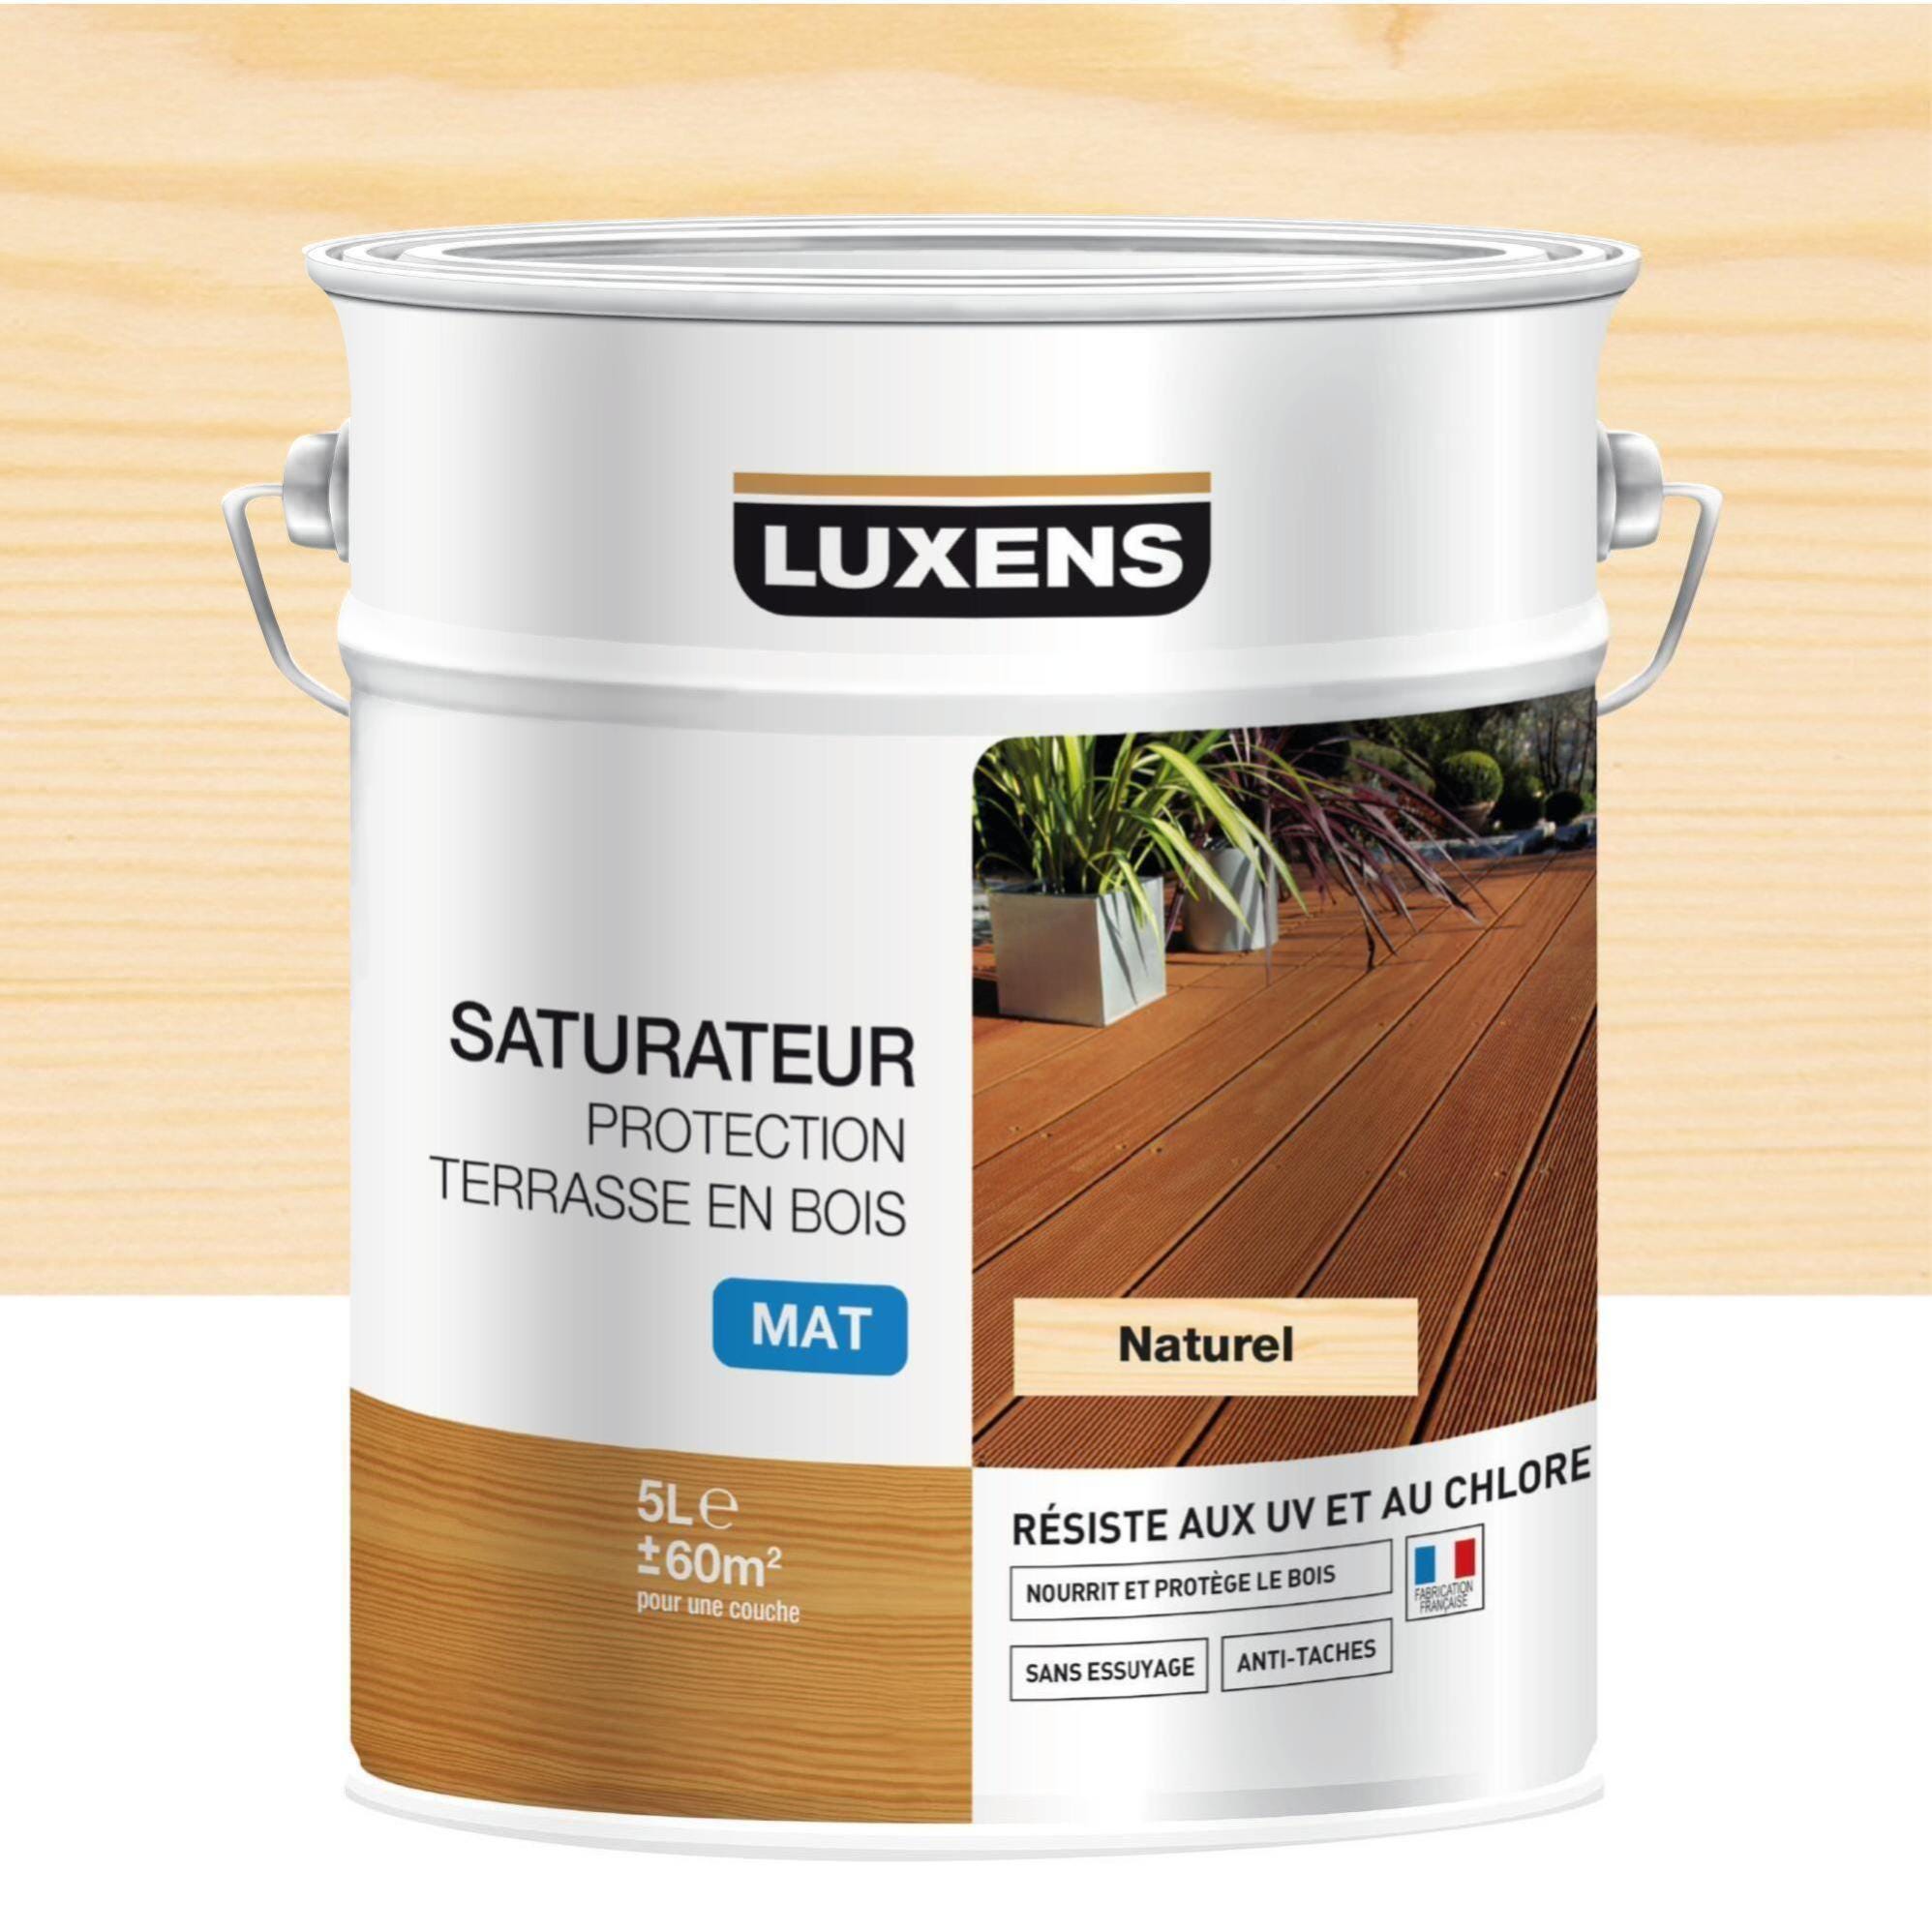 Saturateur pour bois extérieur LUXENS Protection terrasse en bois naturel  mat 2.